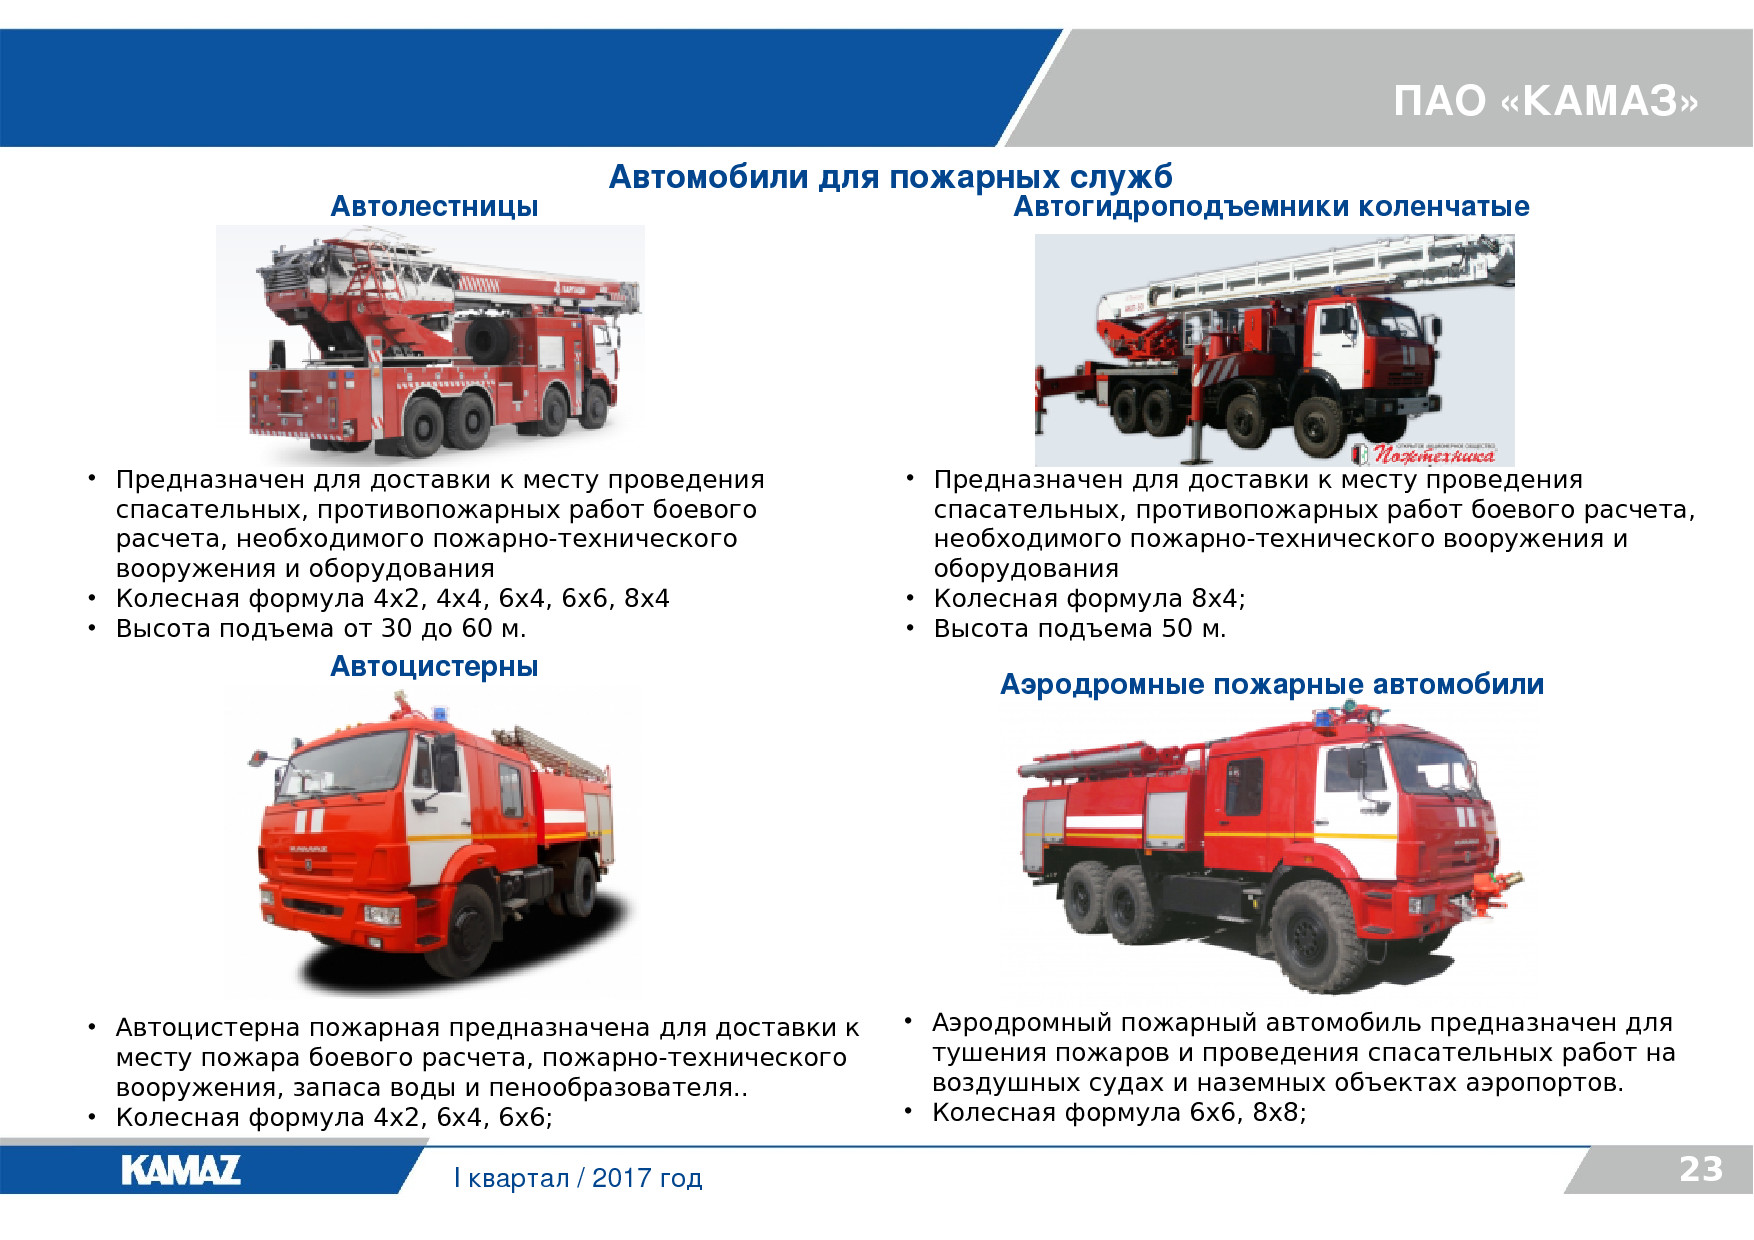 То пожарных автомобилей проводится. ТТХ пожарного КАМАЗА. Объем воды в пожарной машине КАМАЗ. Пожарный КАМАЗ технические характеристики. ТТХ пожарного автомобиля КАМАЗ.